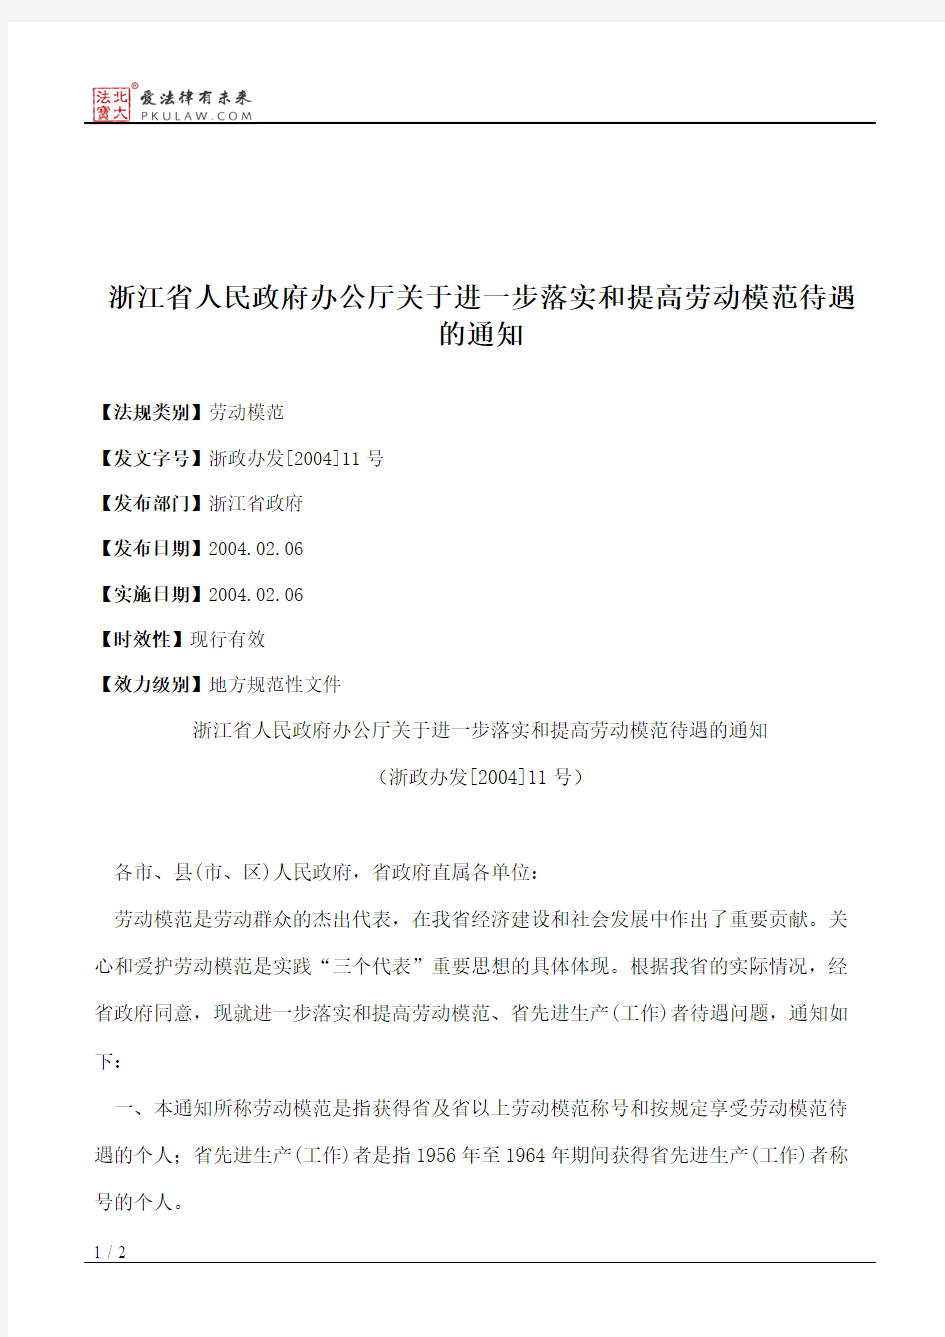 浙江省人民政府办公厅关于进一步落实和提高劳动模范待遇的通知